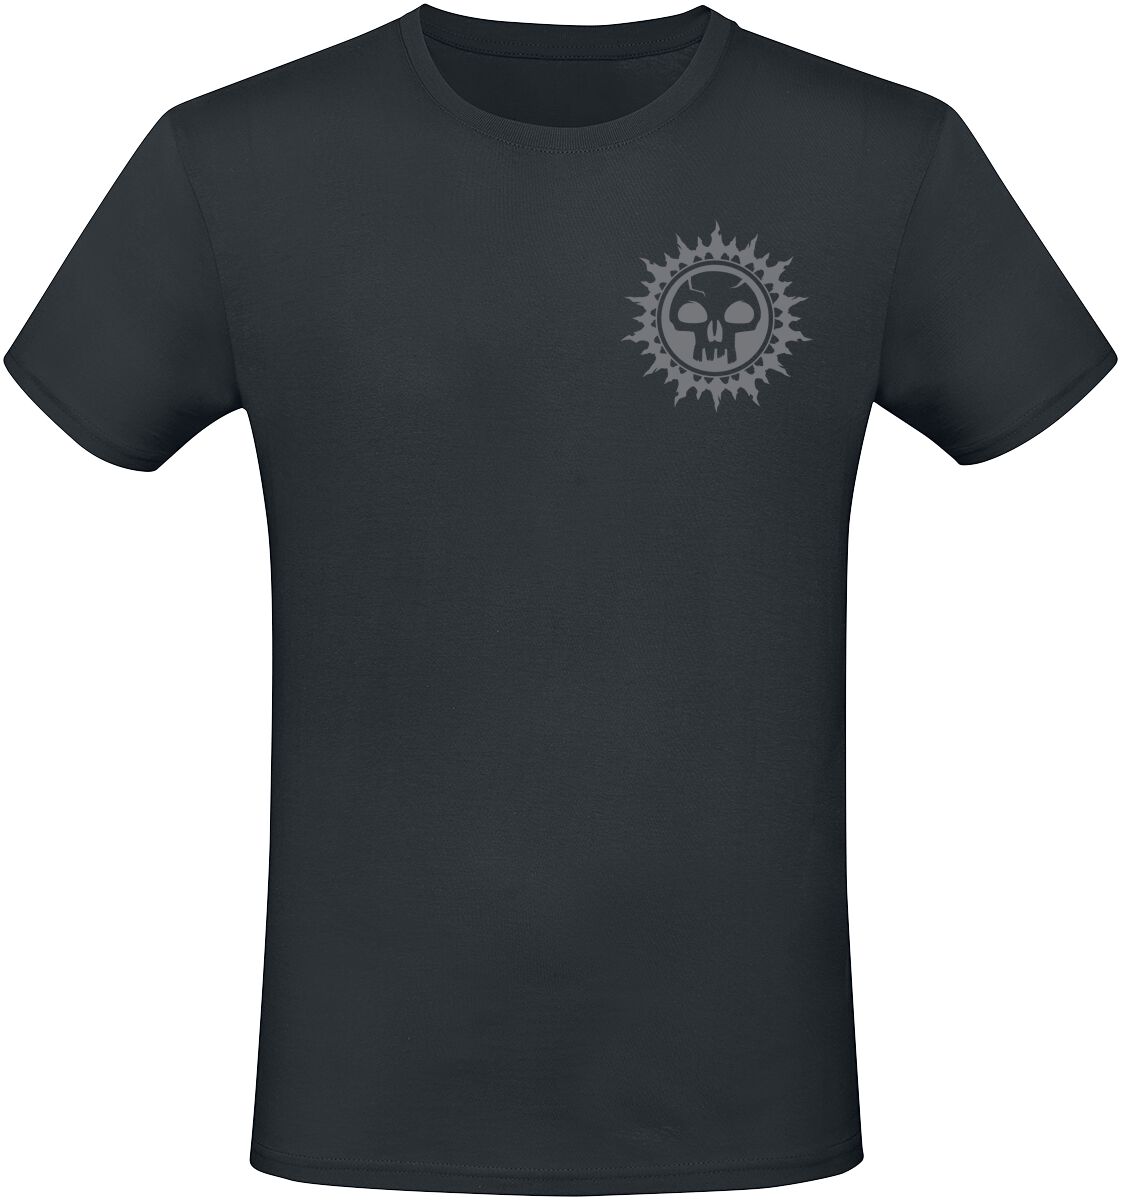 Magic: The Gathering - Gaming T-Shirt - Black Mana - S bis XXL - für Männer - Größe S - schwarz  - EMP exklusives Merchandise!